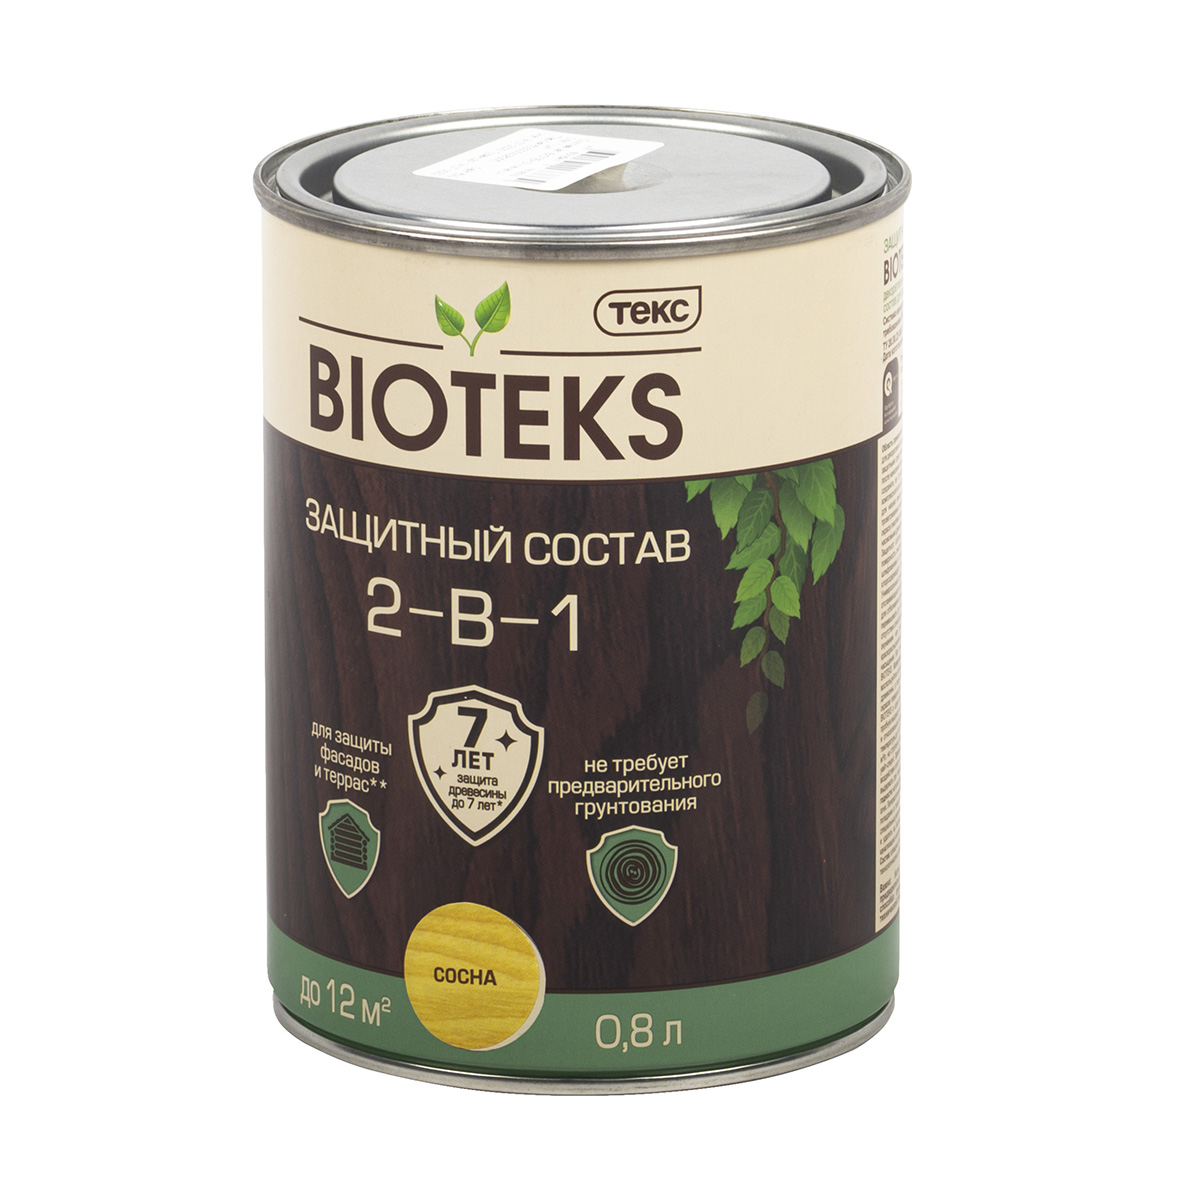 ТЕКС BIOTEKS защитный состав 2-в-1 для наружных работ, золотая сосна (0,8л)